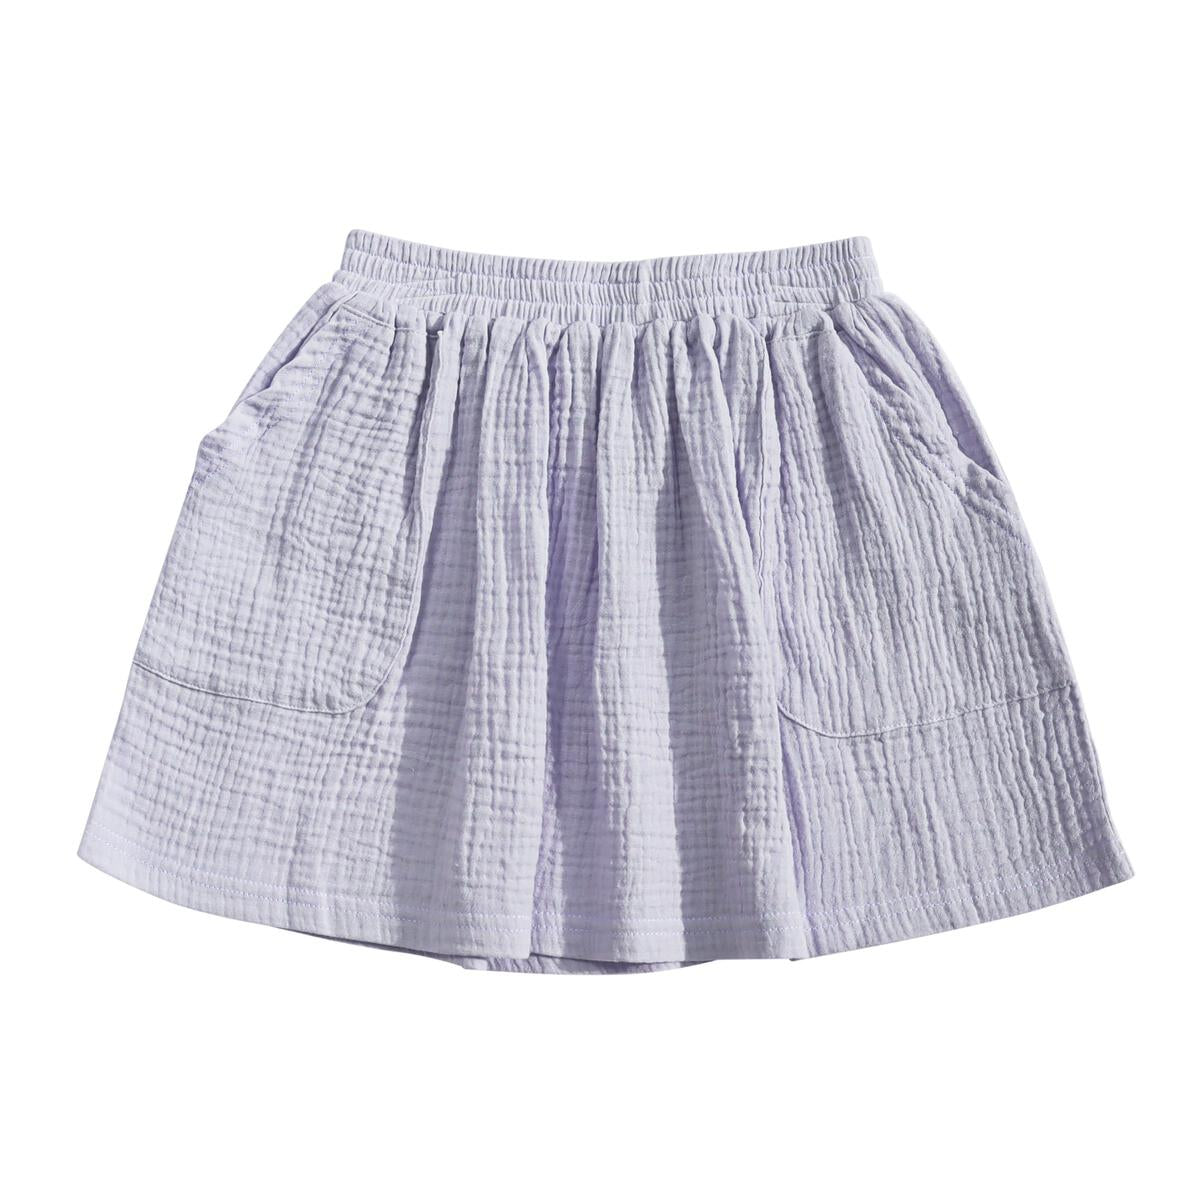 Woven Pocket Skirt